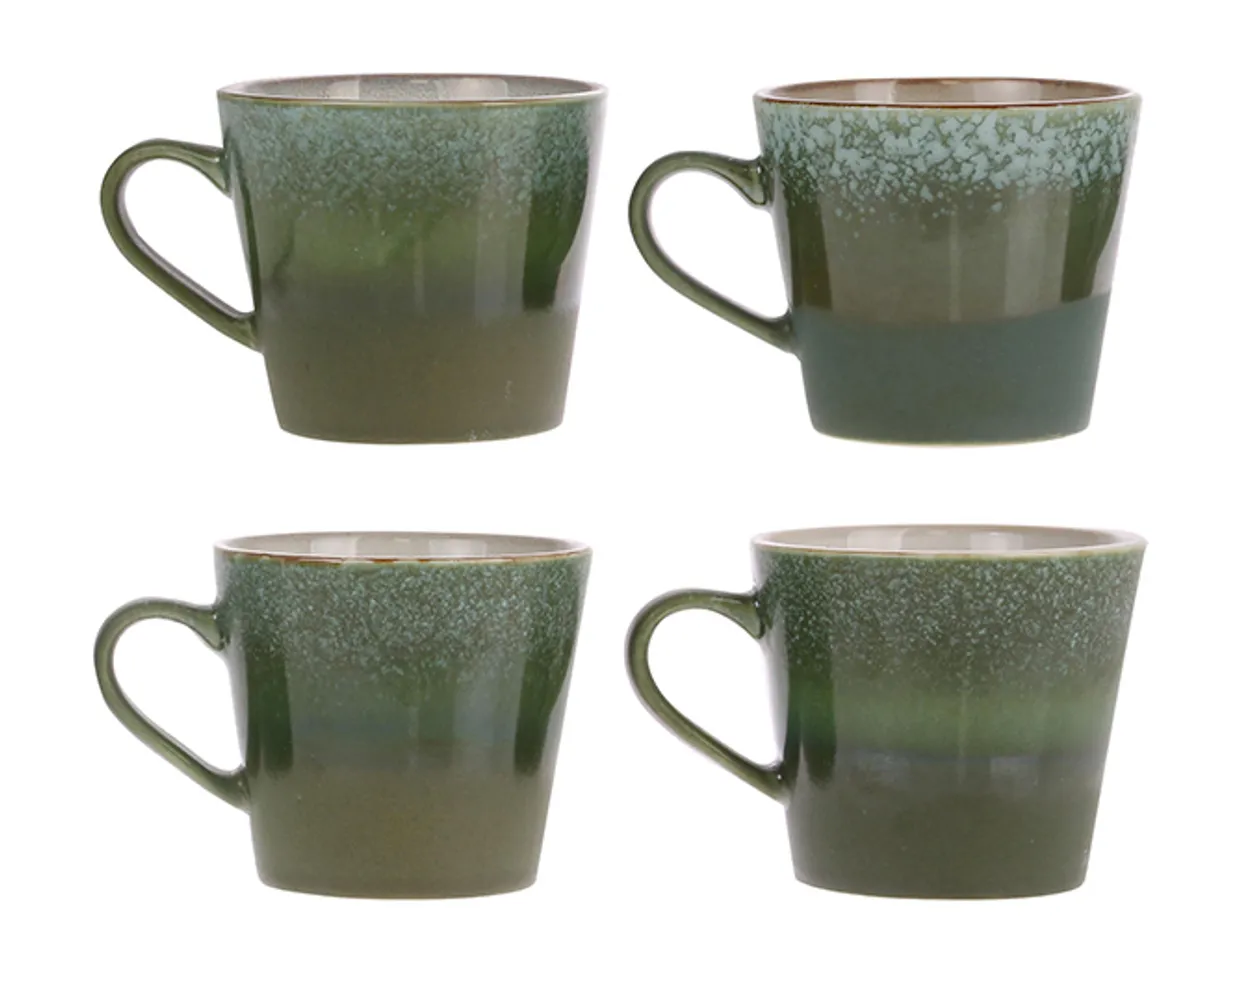 70s ceramics: cappuccino mug, grass